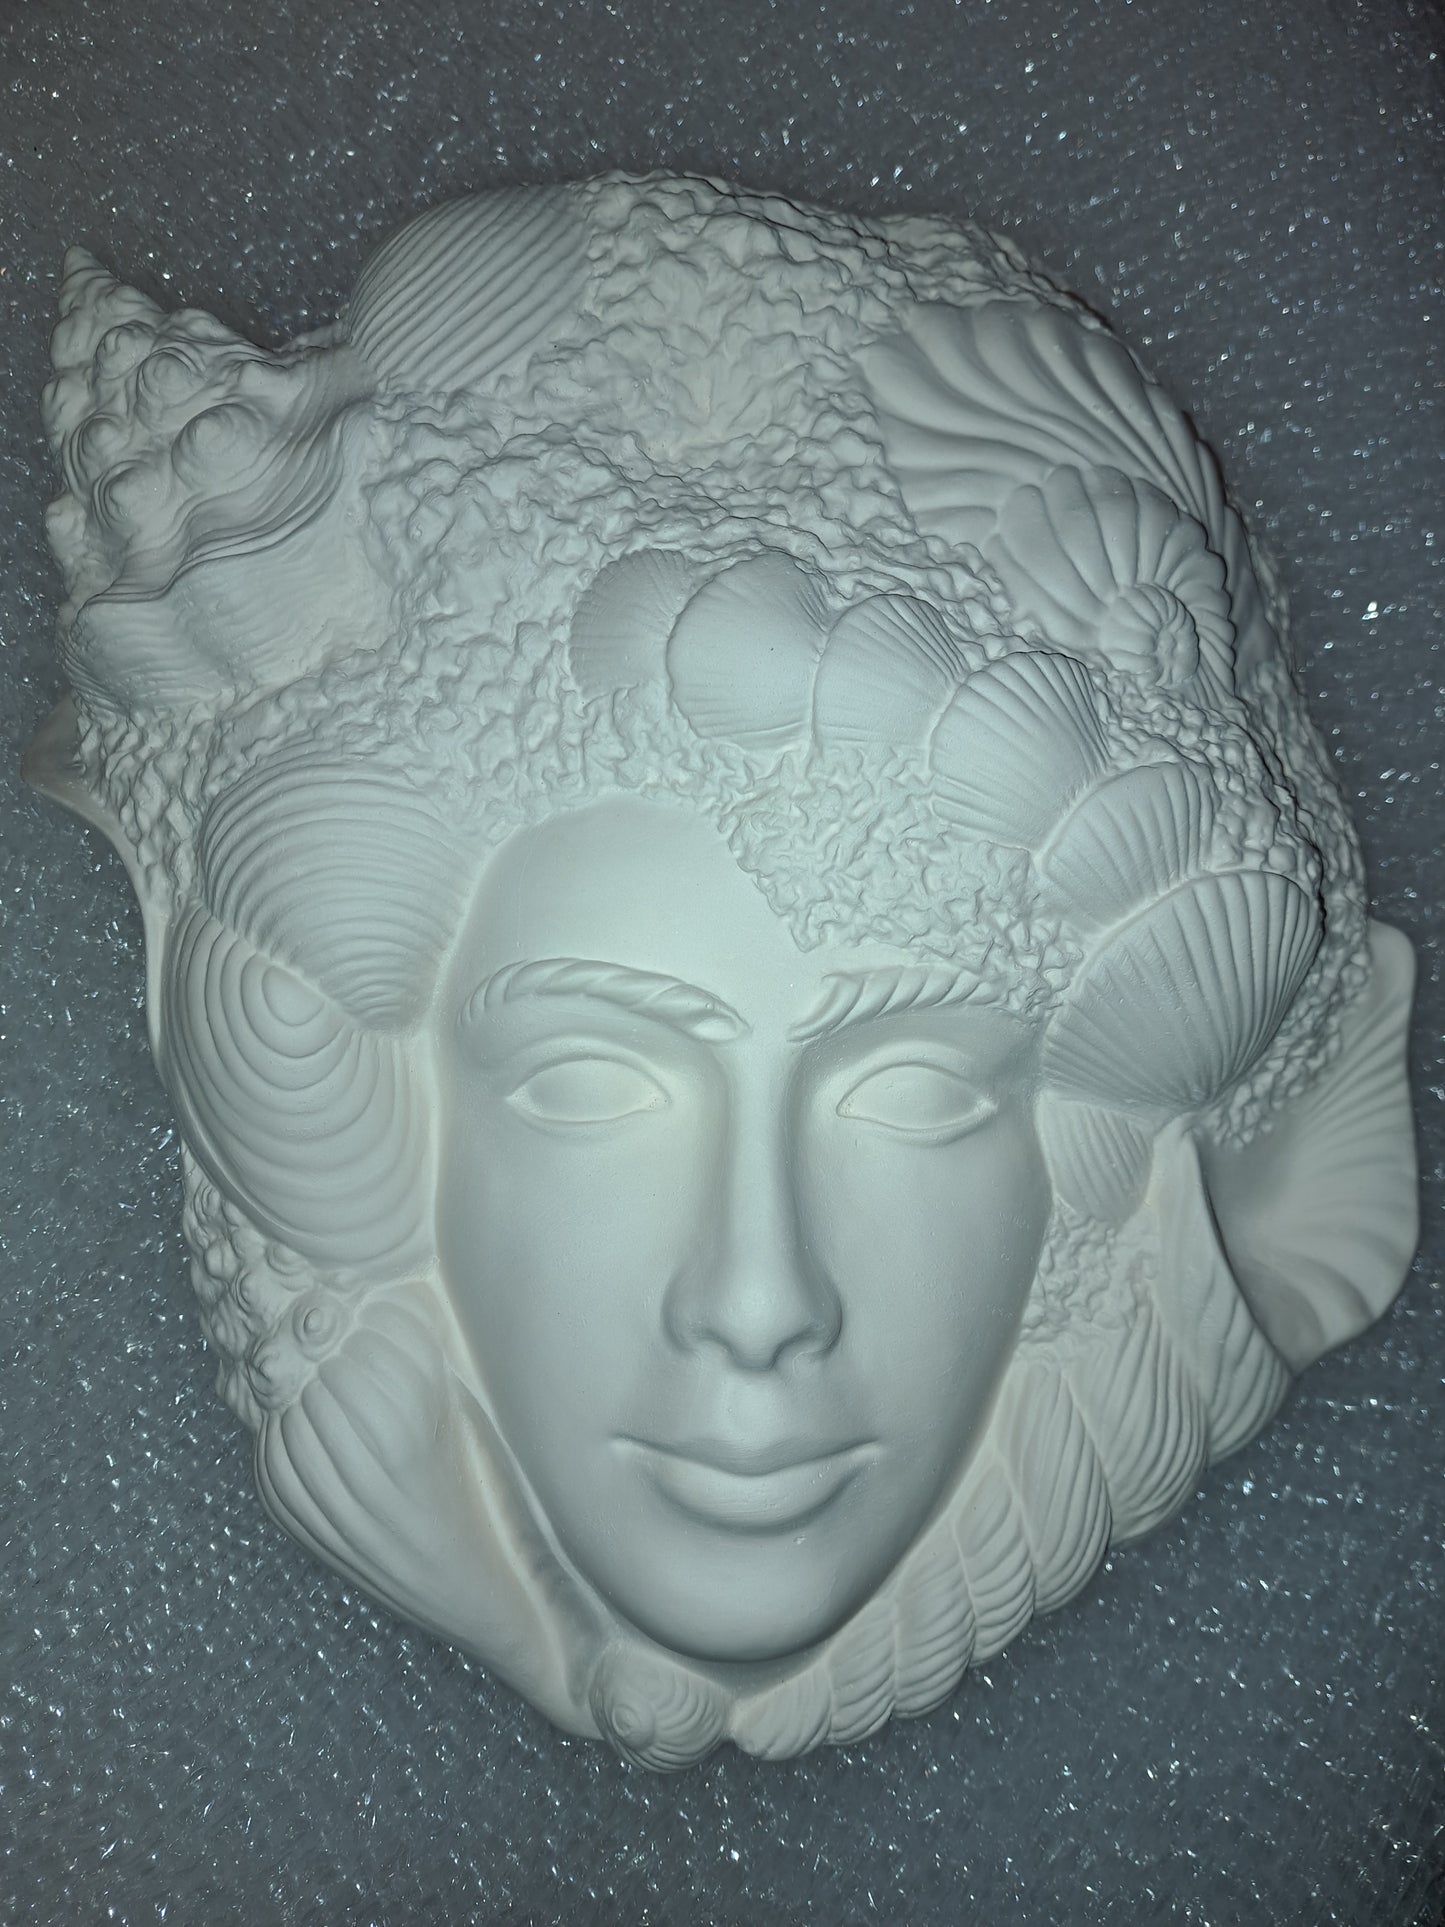 Ceramic Ready To Paint Seashell Face